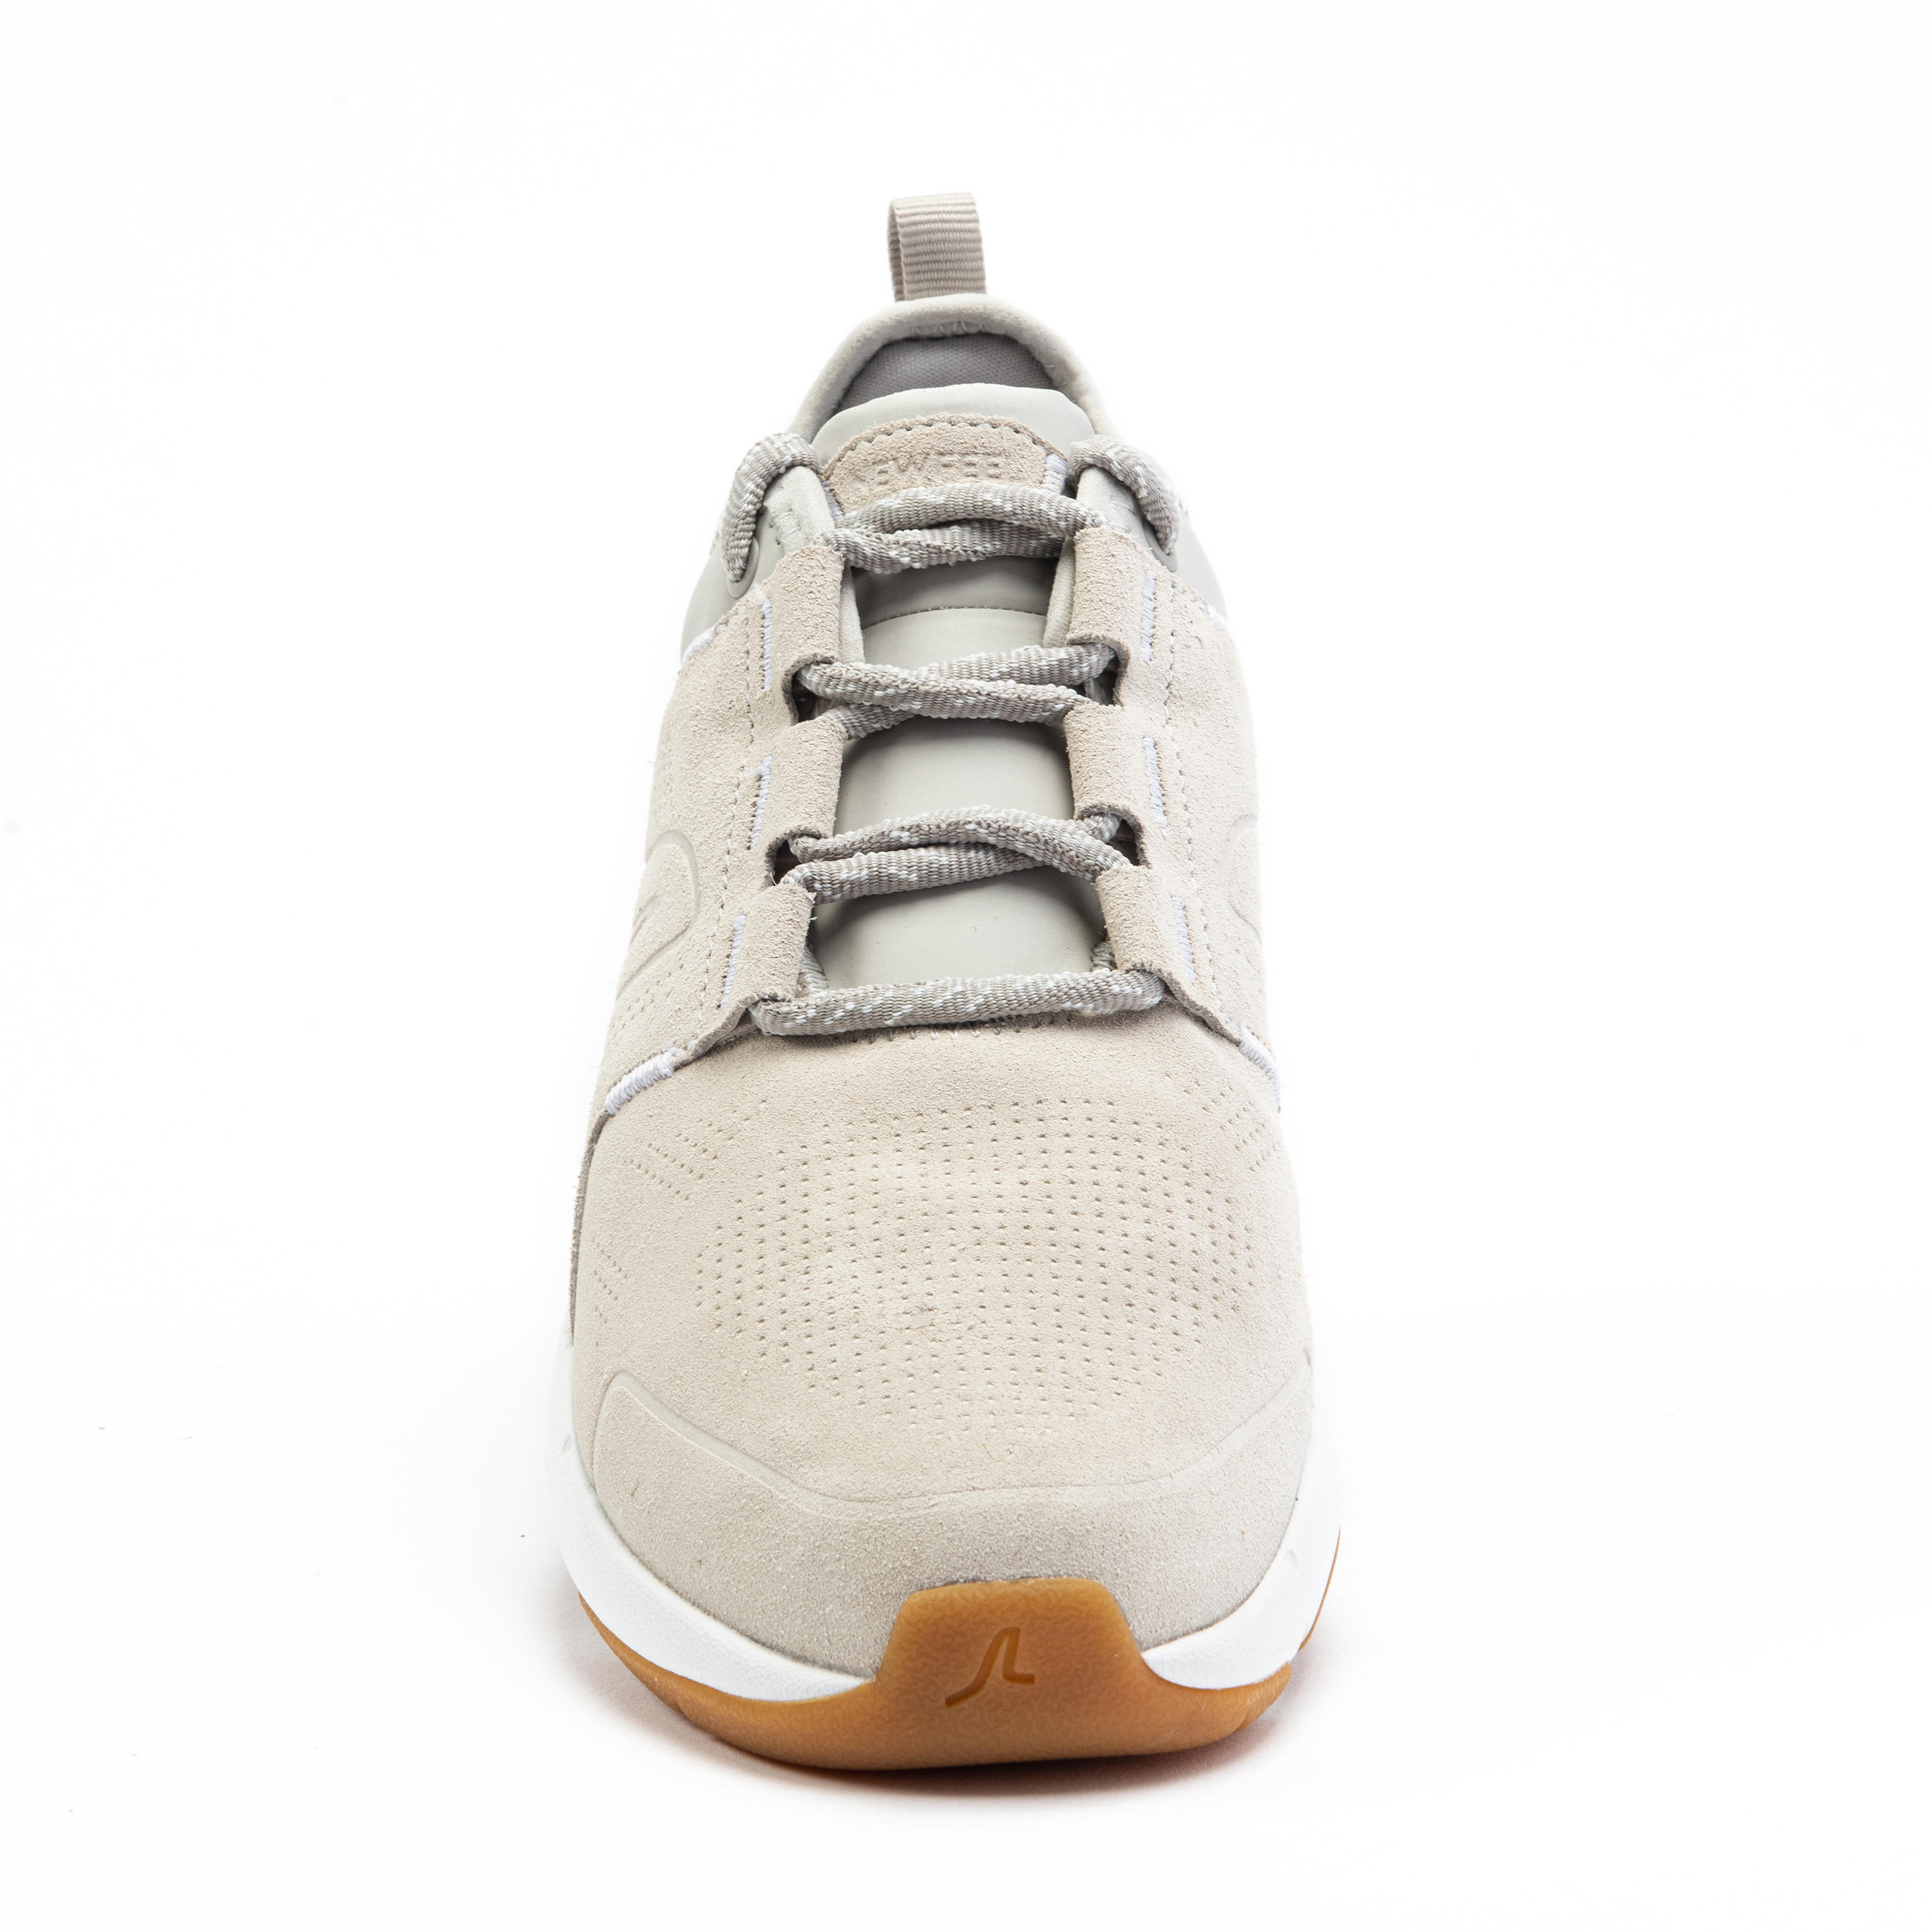 Women's City Walking Shoes Actiwalk Comfort Leather - beige 15/35